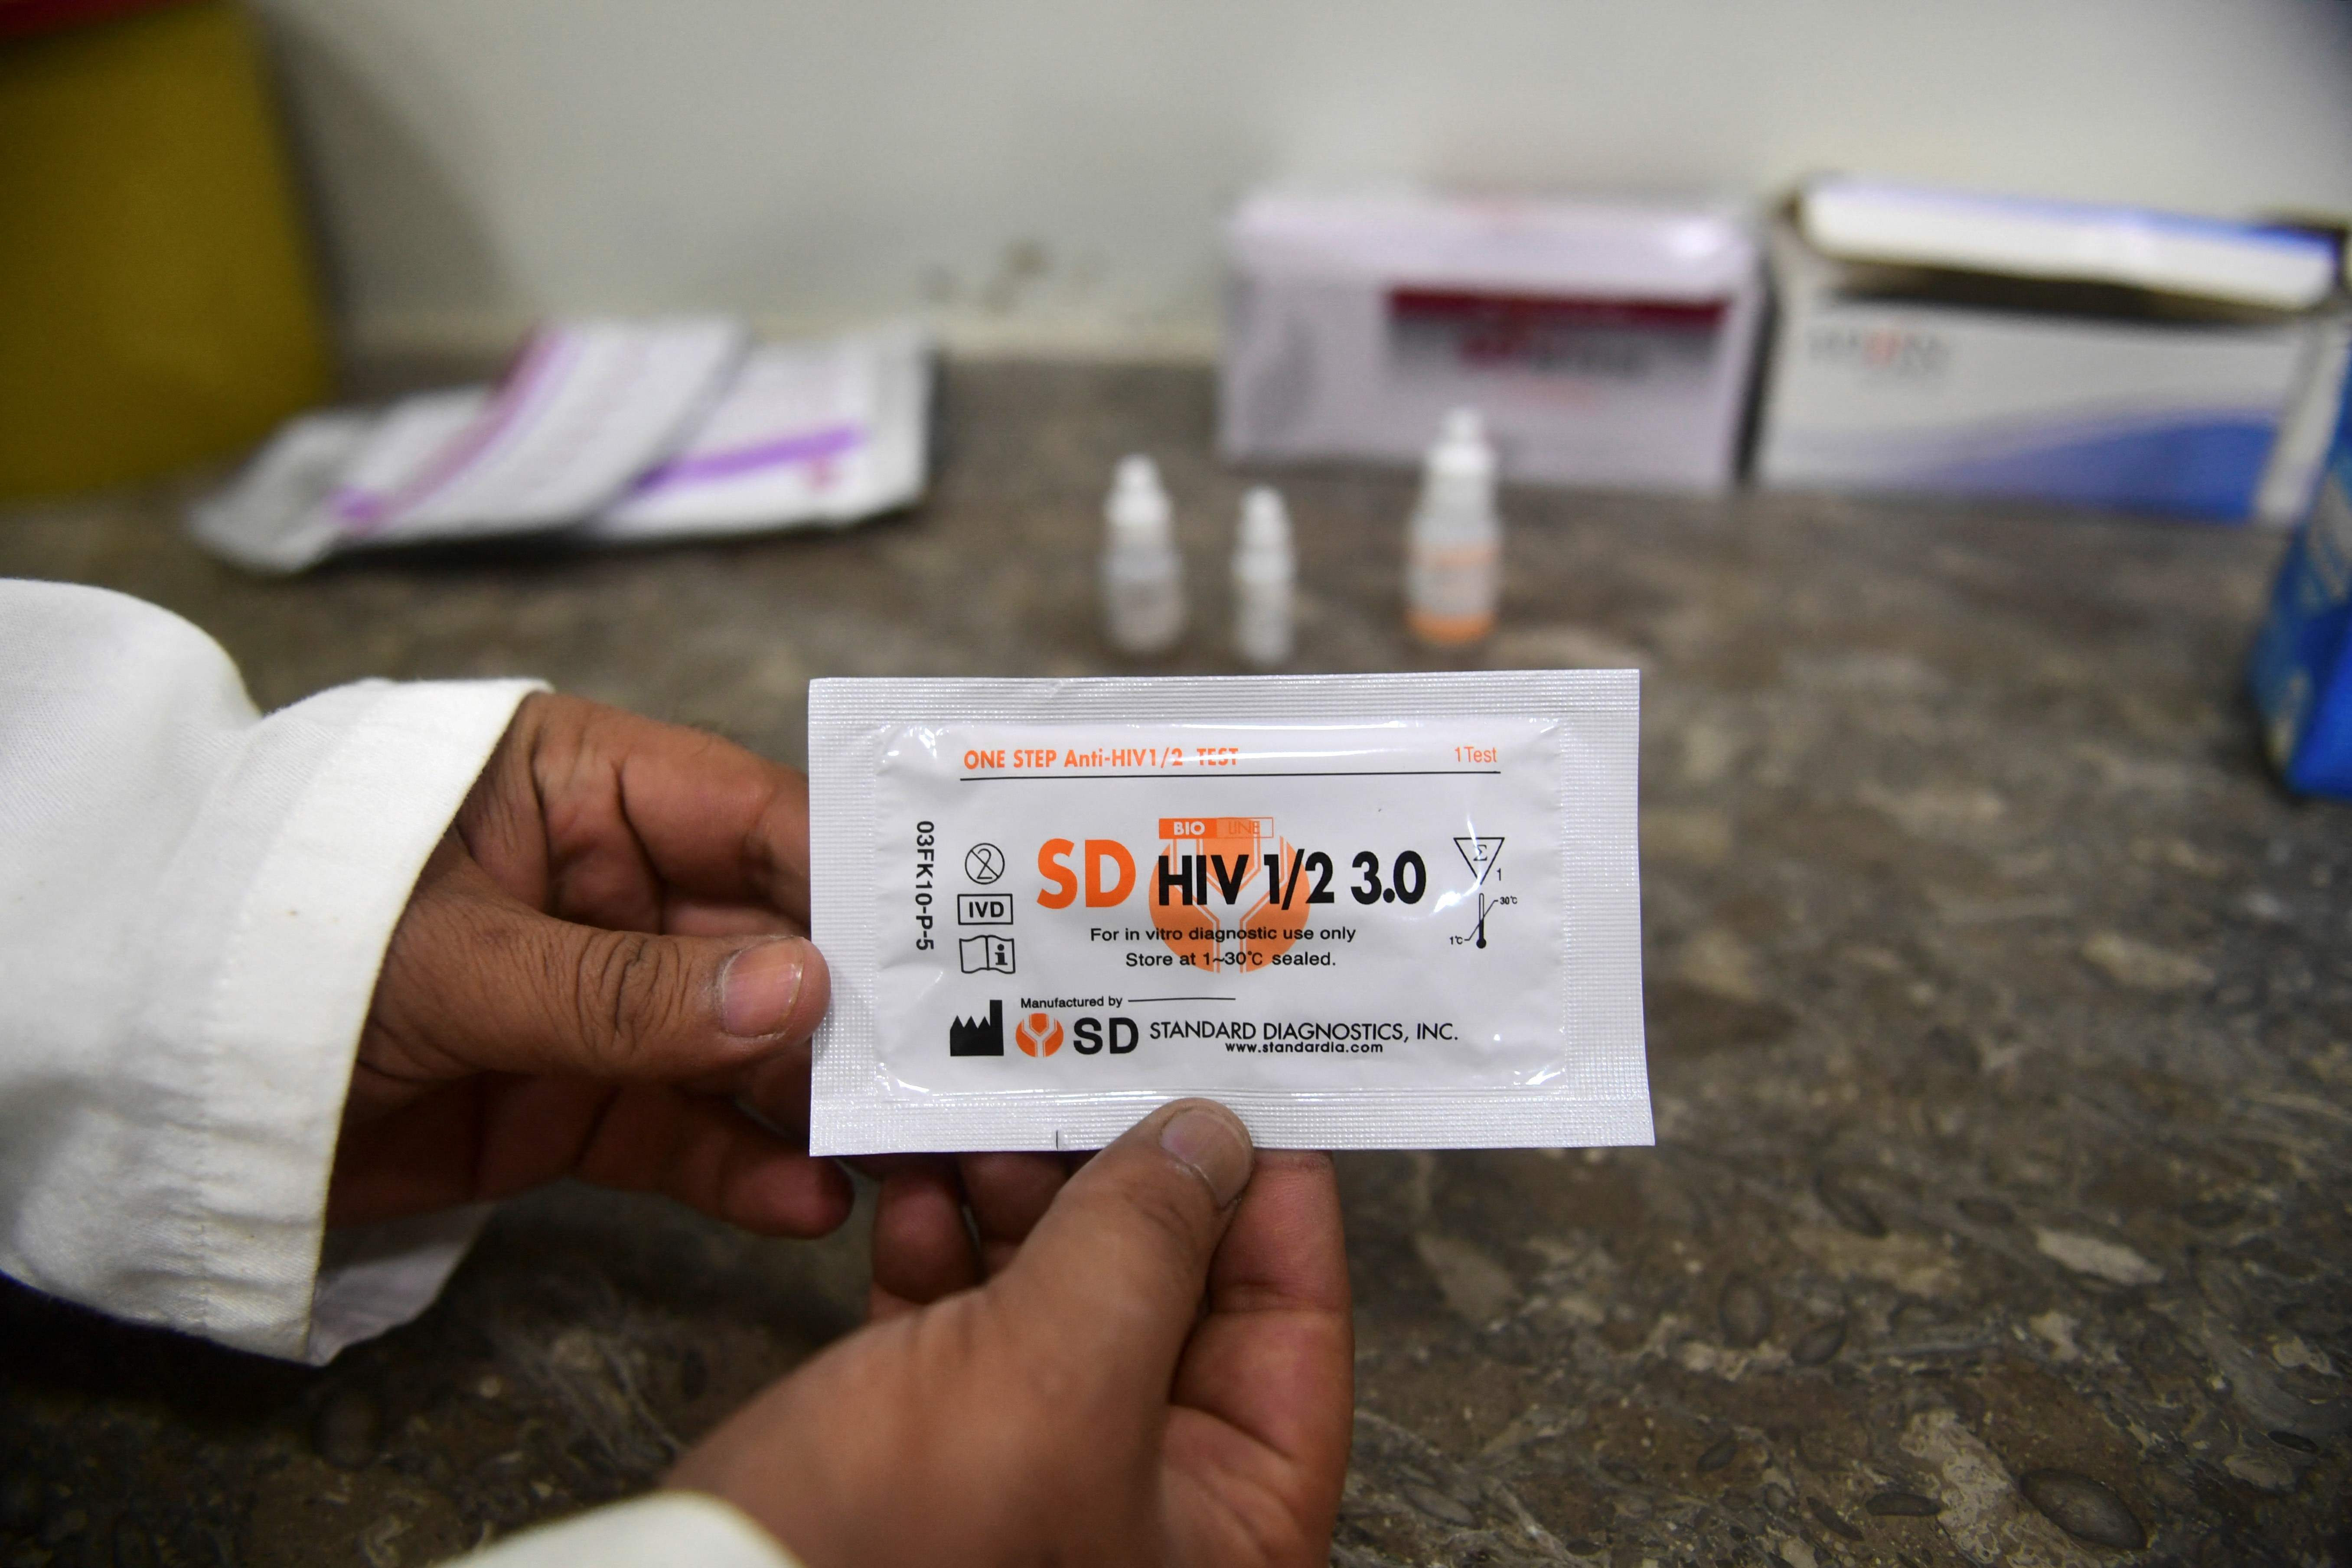 Autotest de Dépistage du HIV (Sida) - Vente en ligne PharmacieVeau